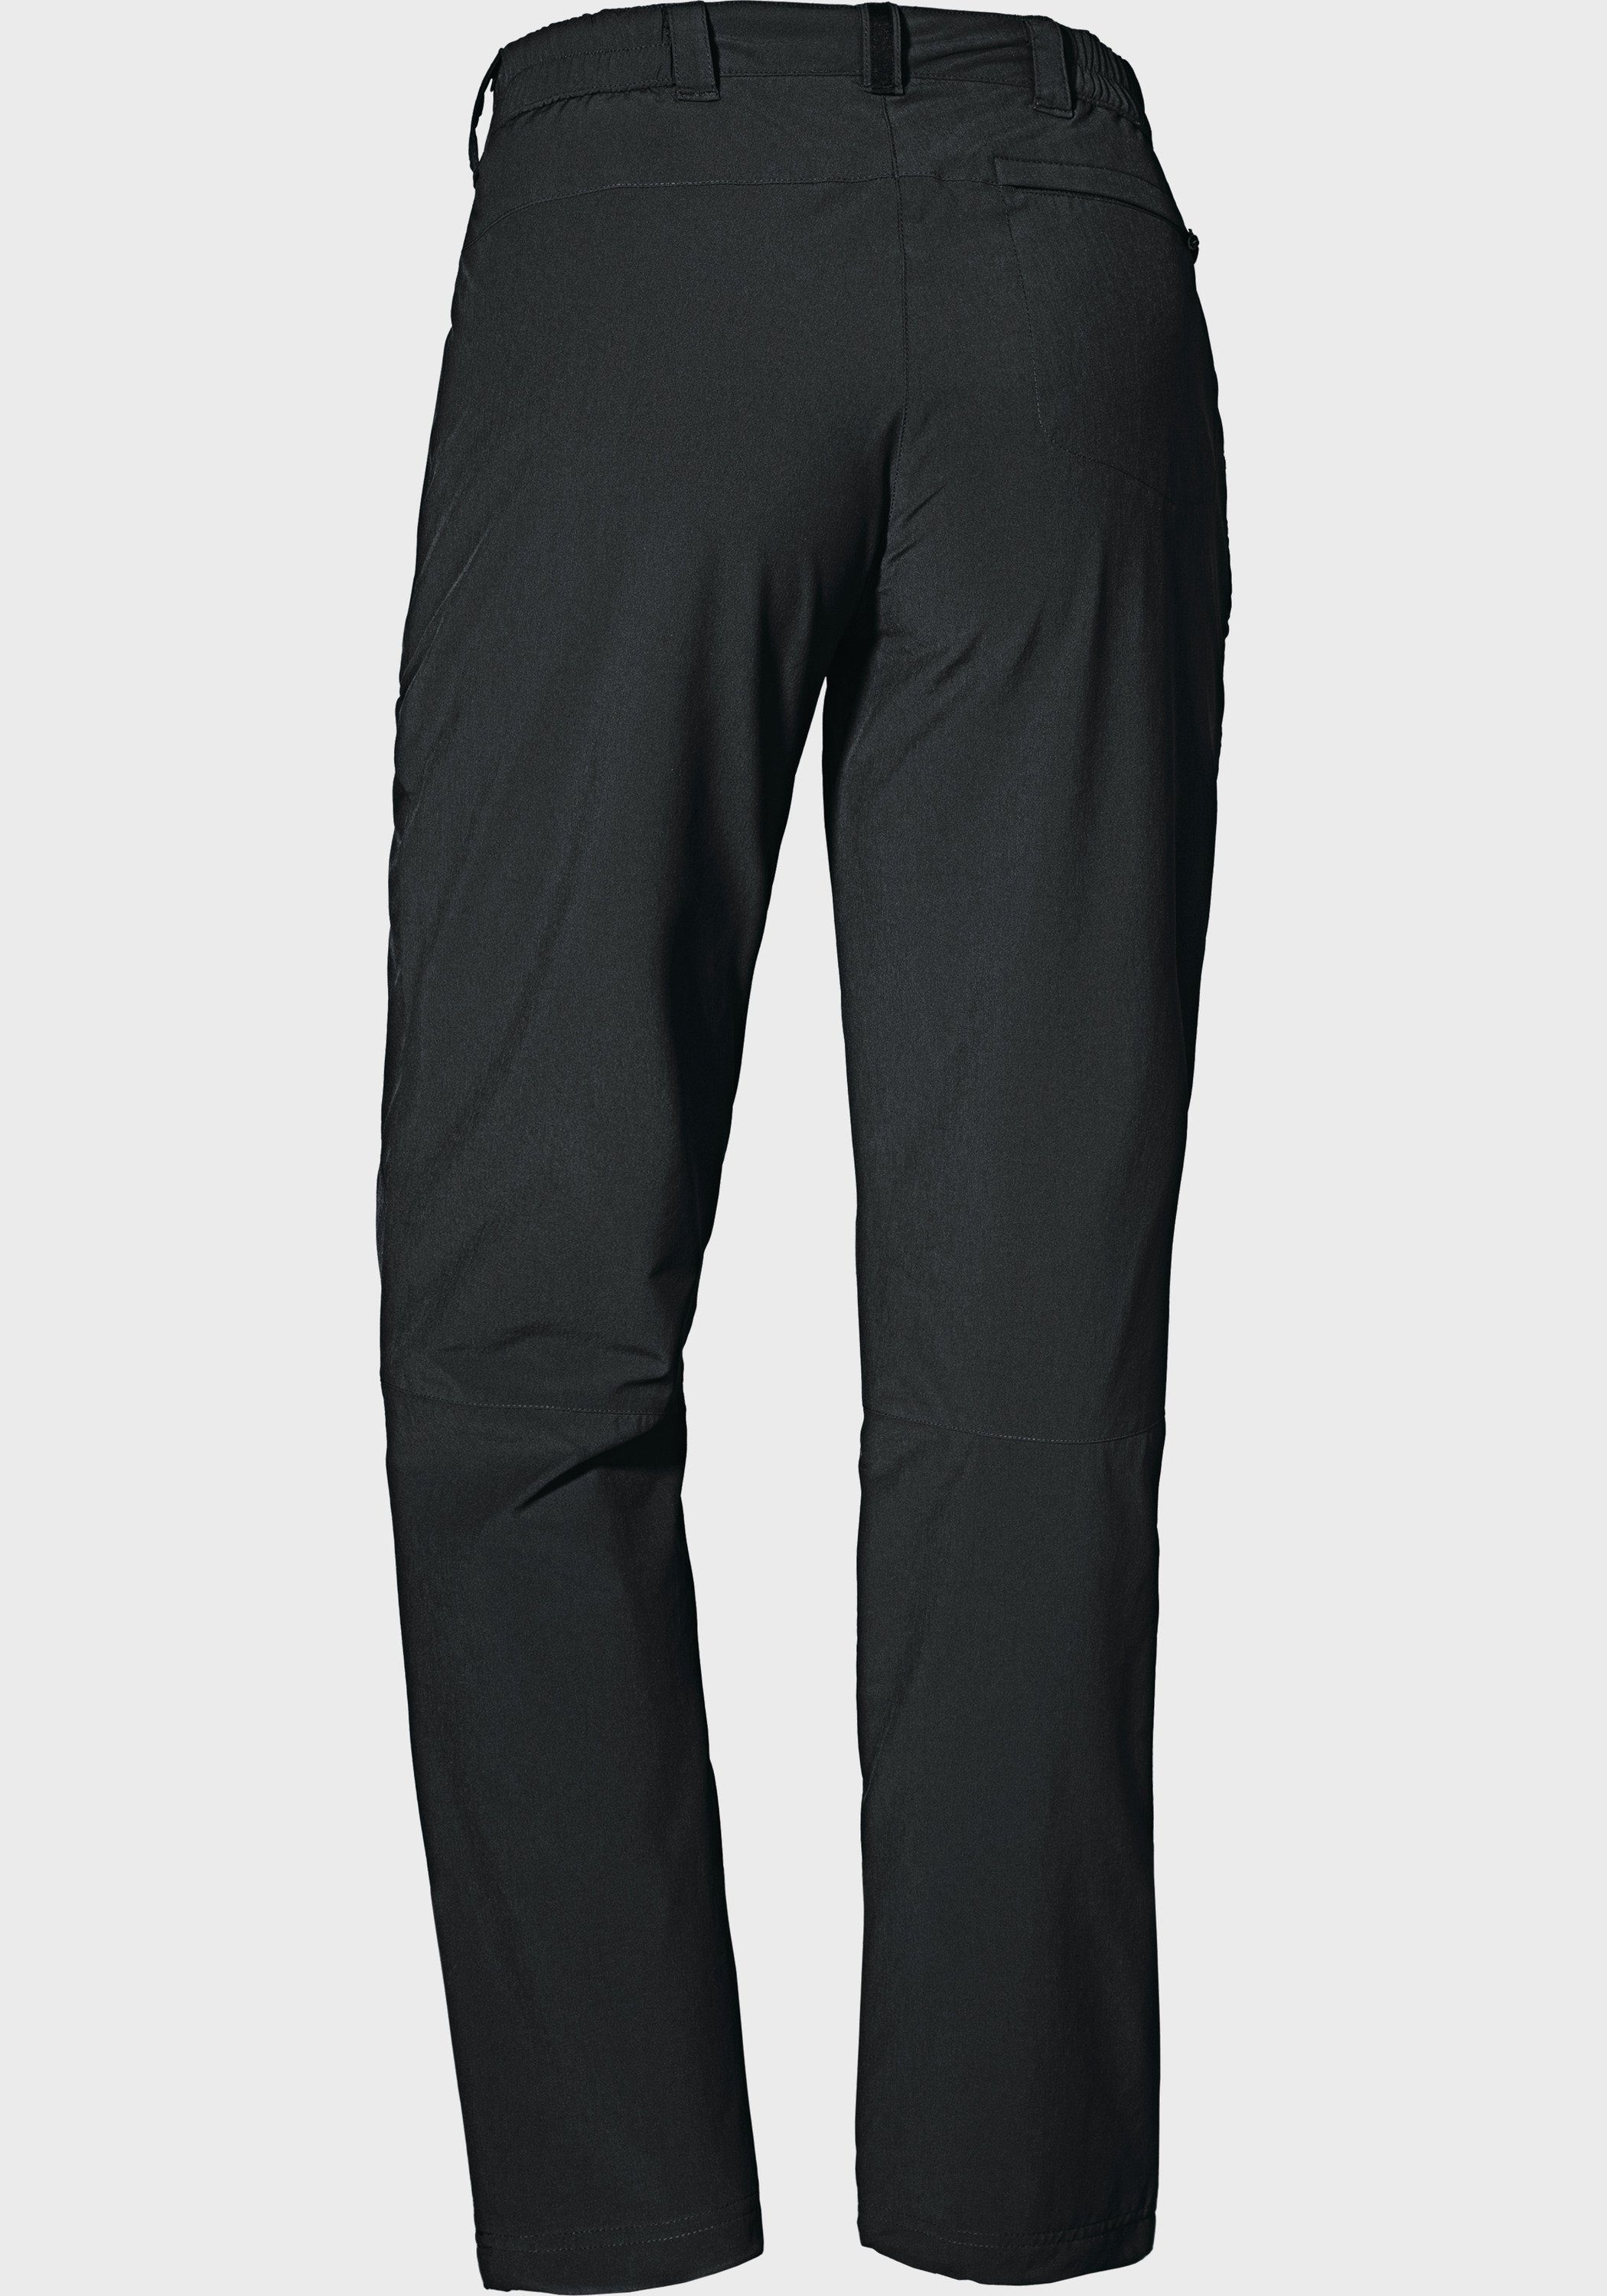 Schöffel Outdoorhose Pants Engadin1 Warm L schwarz